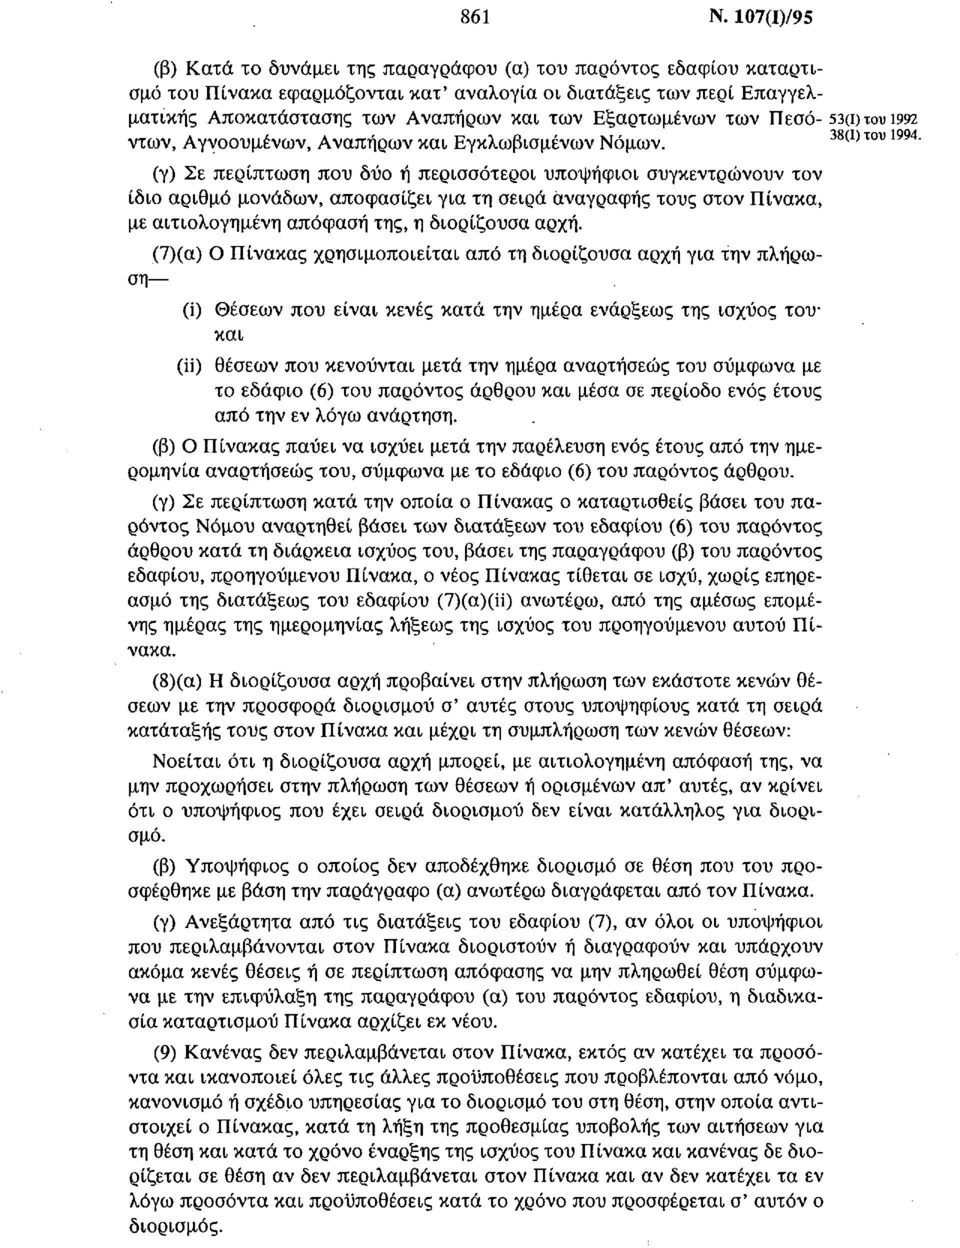 Εξαρτωμένων των Πεσό 53(ΐ)τουΐ992 ντων, Αγνοουμένων, Αναπήρων και Εγκλωβισμένων Νόμων. 38(ΐ)του 1994.